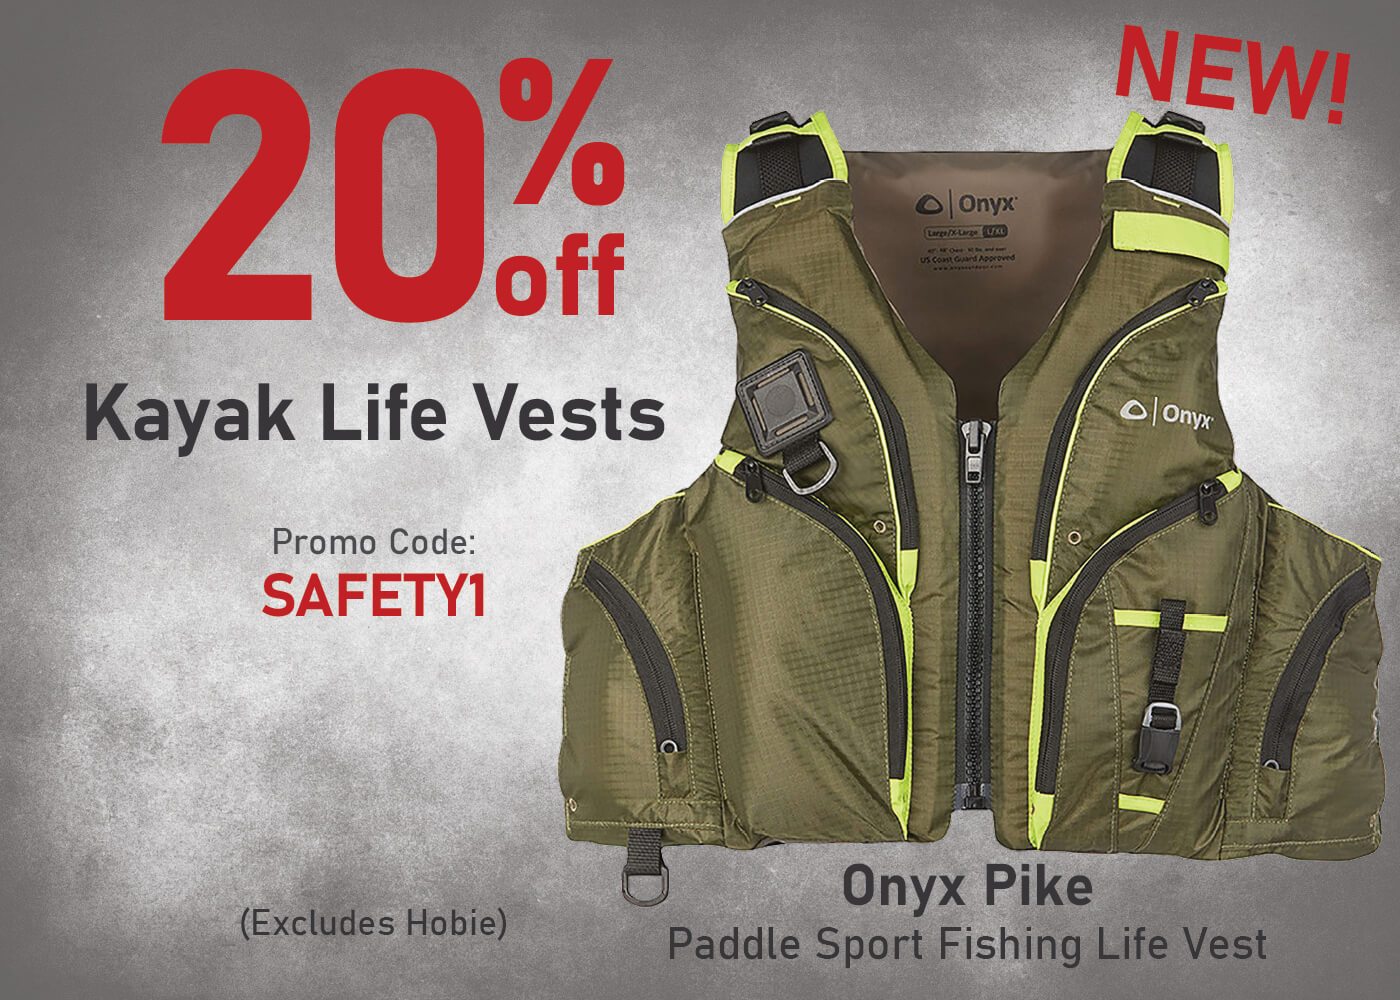 Save 20% on Kayak Life Vests